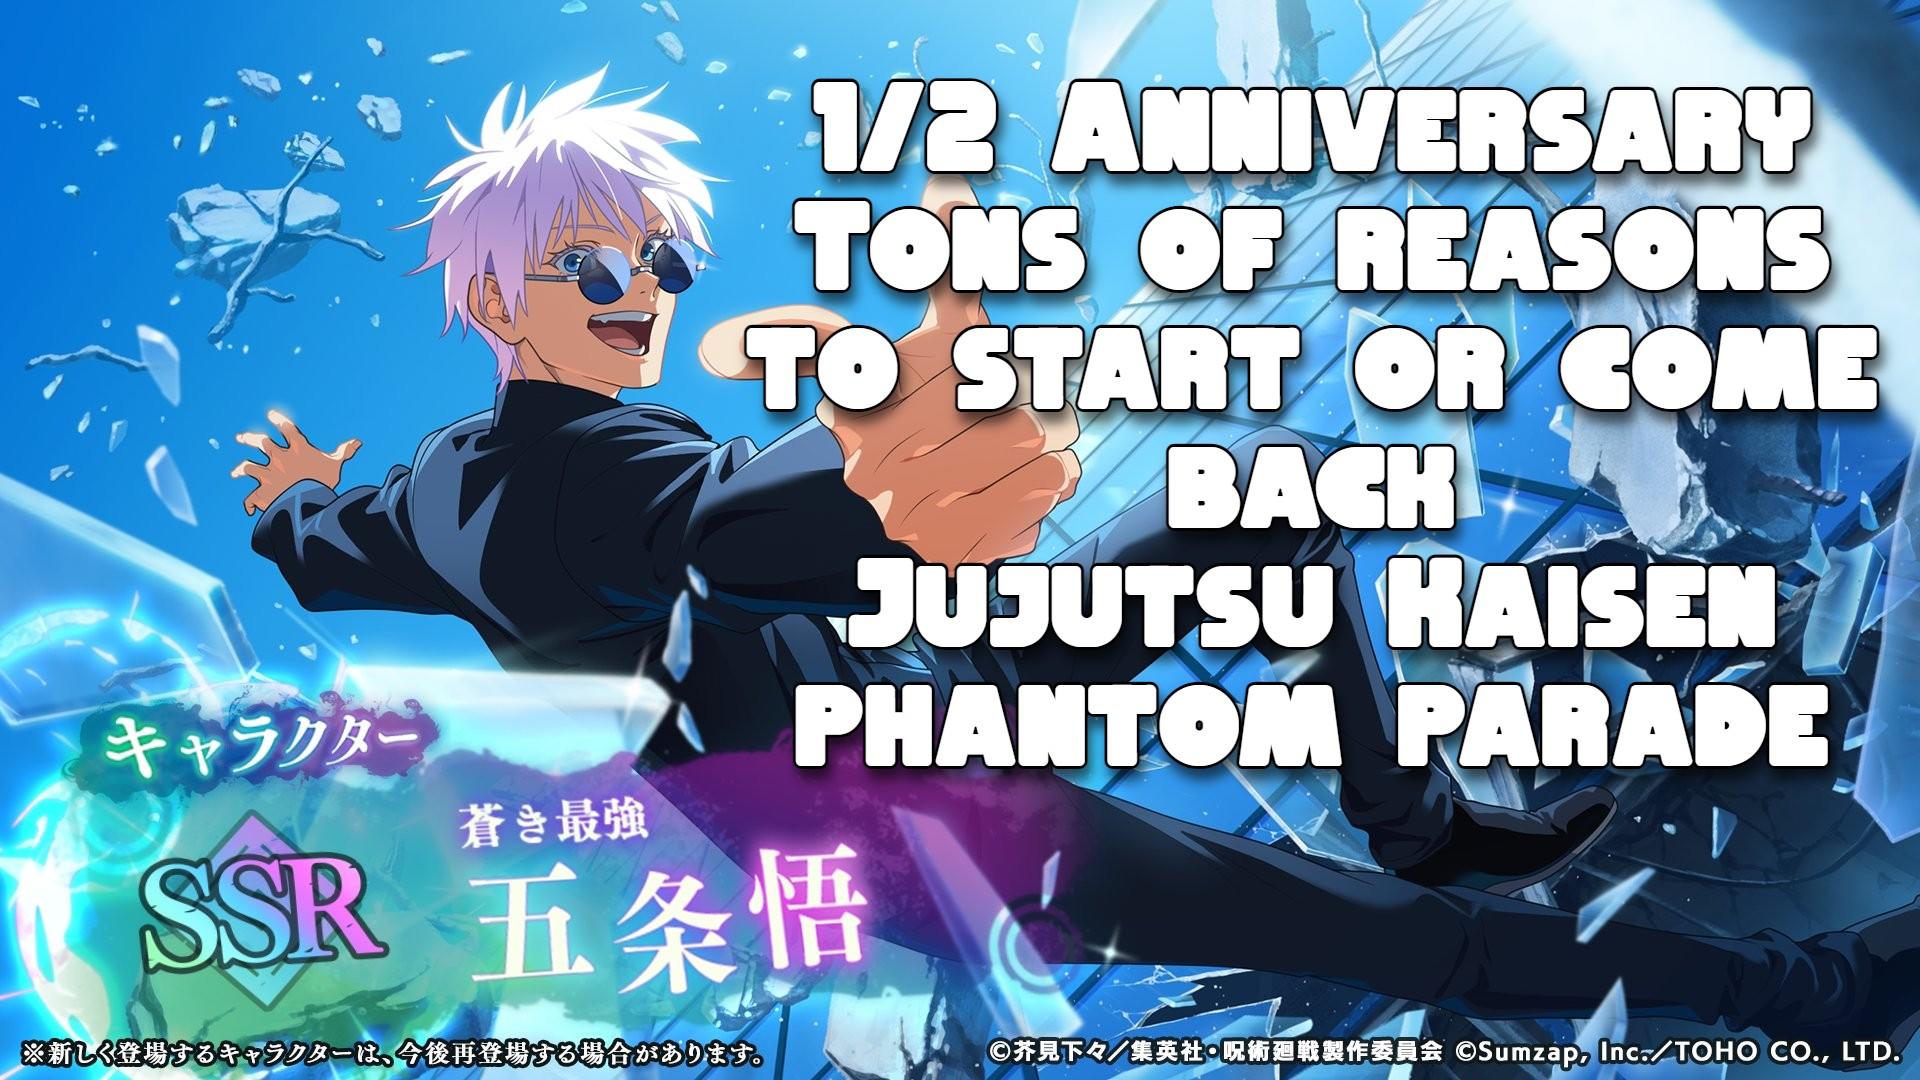 Jujutsu Kaisen Phantom Parade 1/2 Anniversary Is Live Best Time To Play